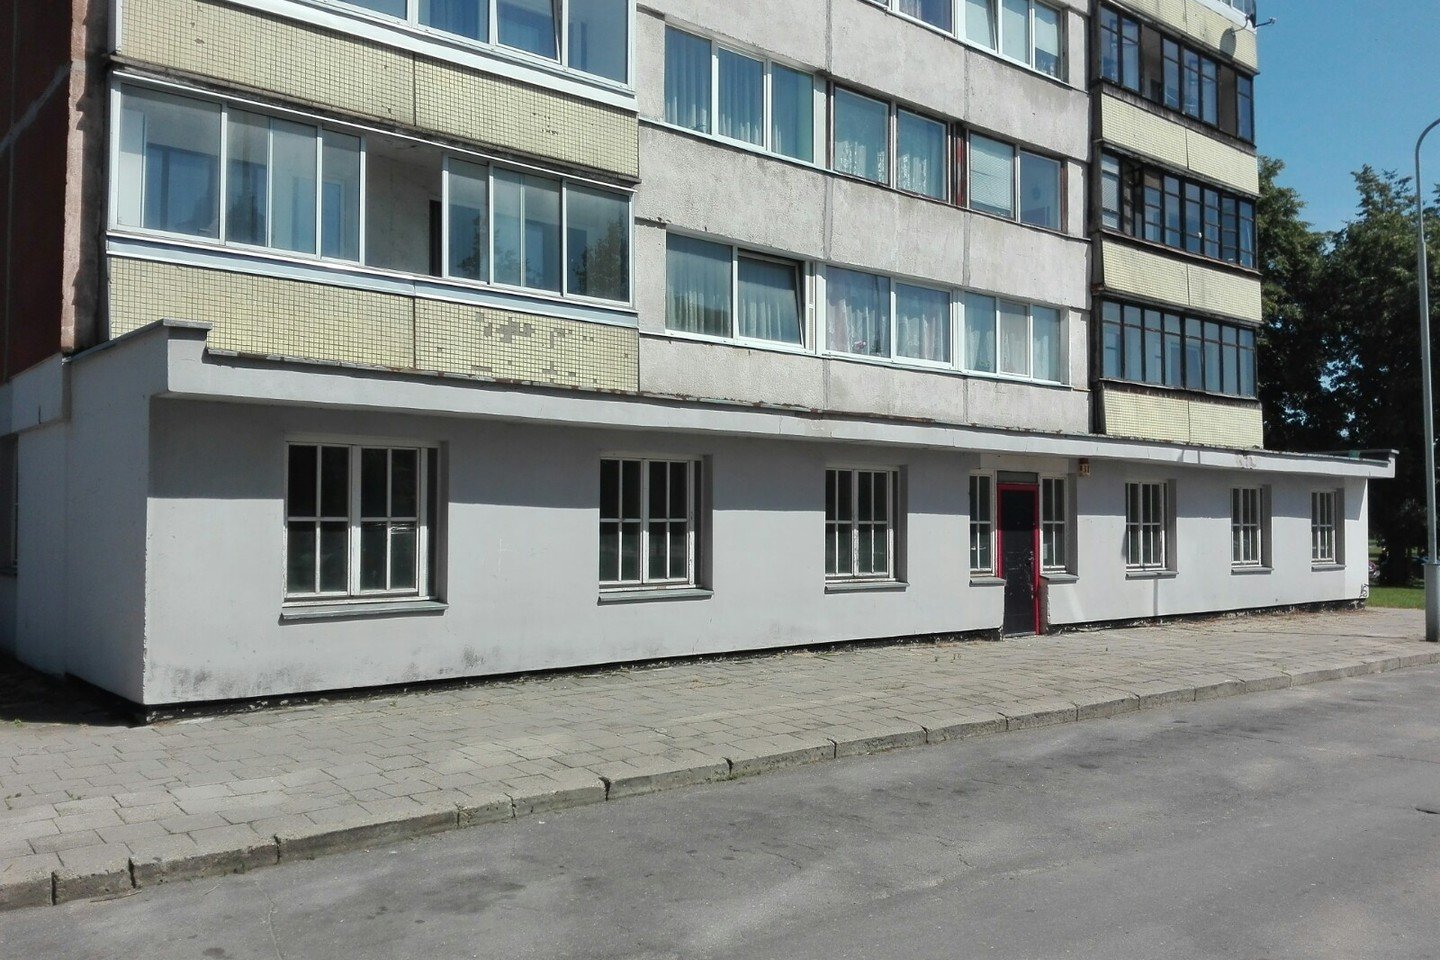 M.Bunkaitė keturis būtus senjorams 2018-aisiais įrengė Vilniuje, Karoliniškėse.<br> M.Bunkaitės asmeninio archyvo nuotr.